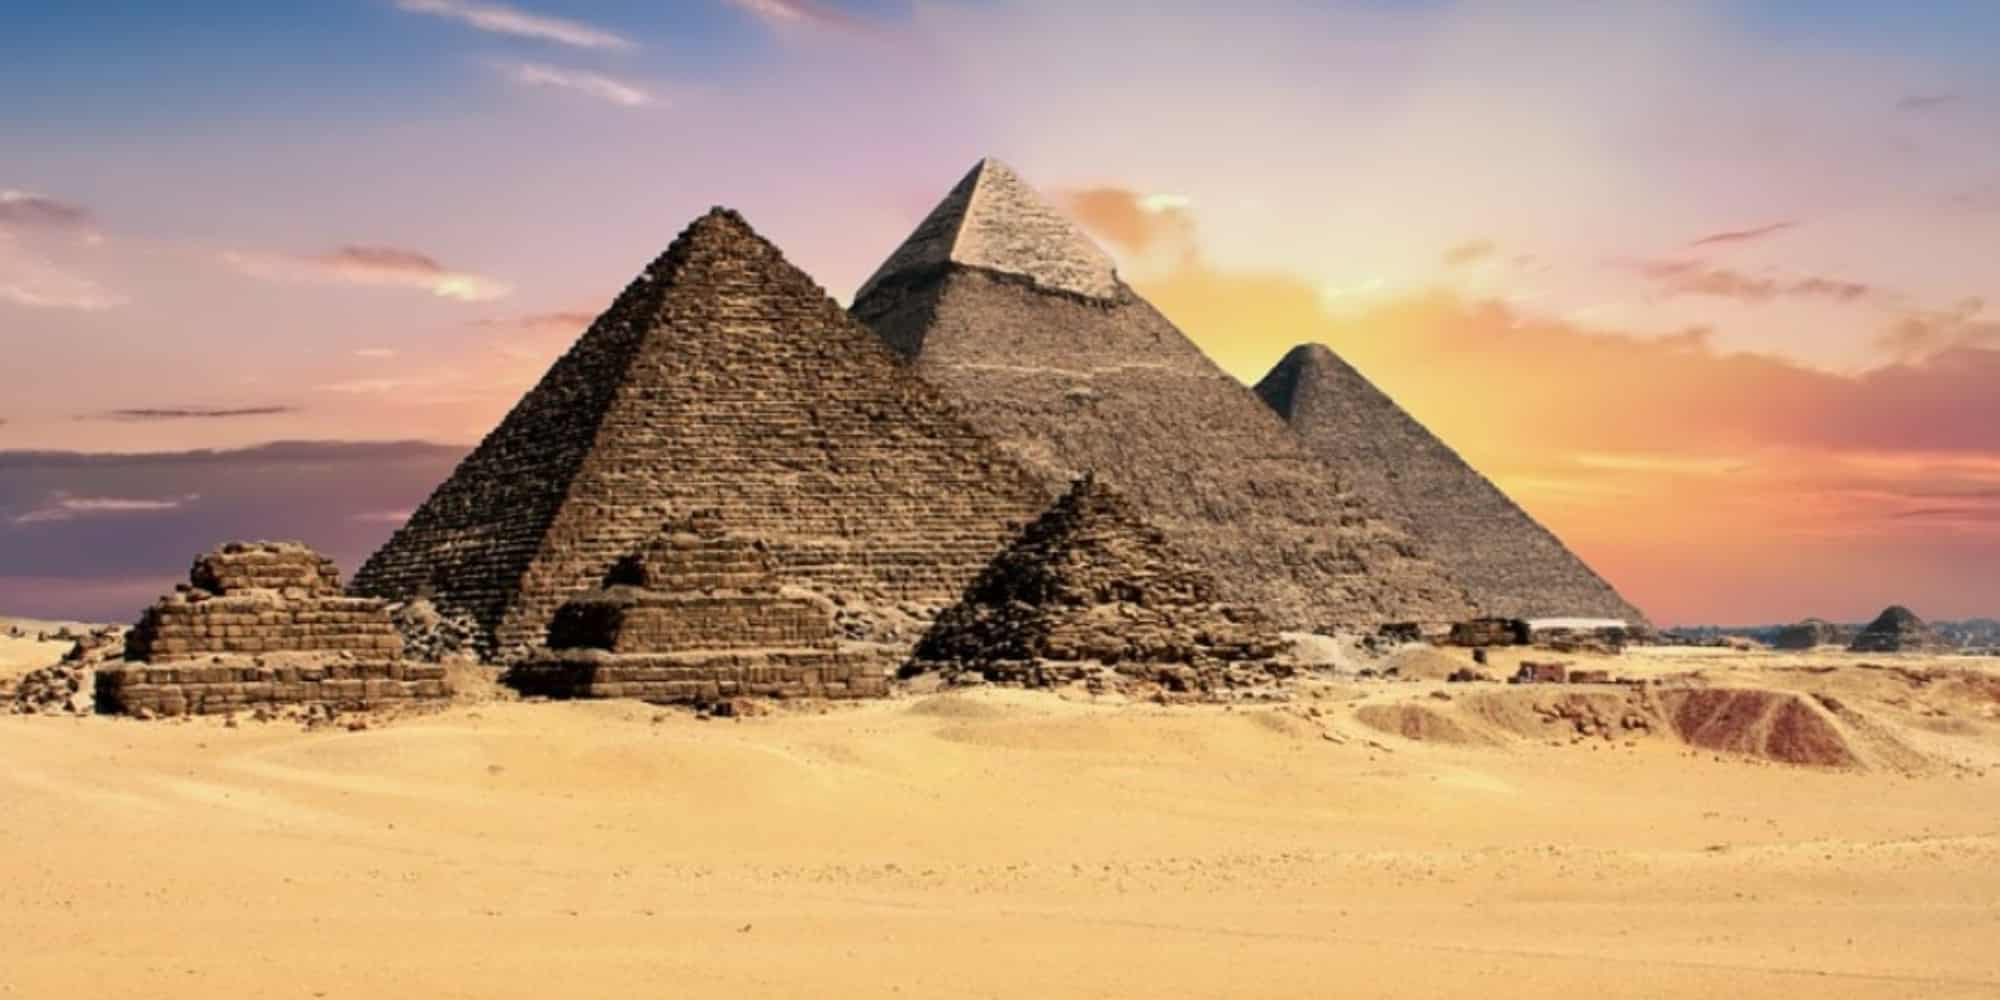 Οι πυραμίδες της Αιγύπτου